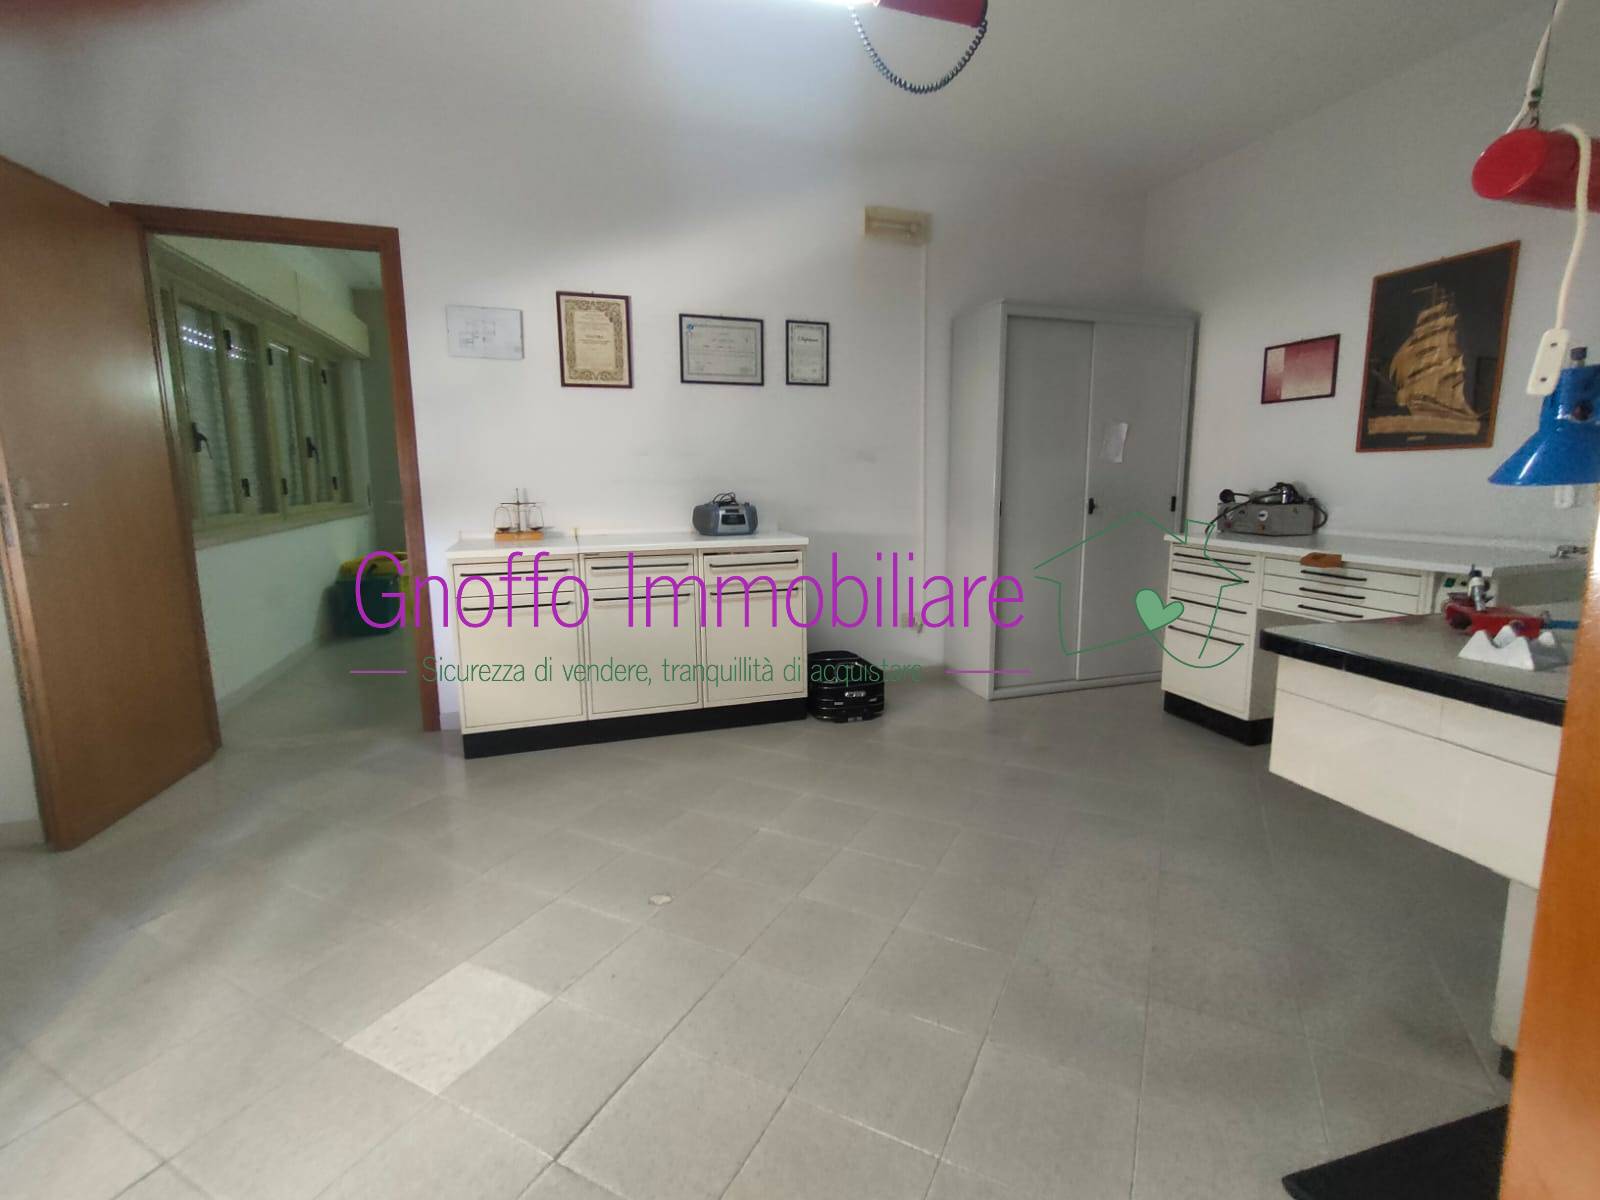 Appartamento in vendita a Erice, 3 locali, zona Località: CASA SANTA, prezzo € 40.000 | PortaleAgenzieImmobiliari.it